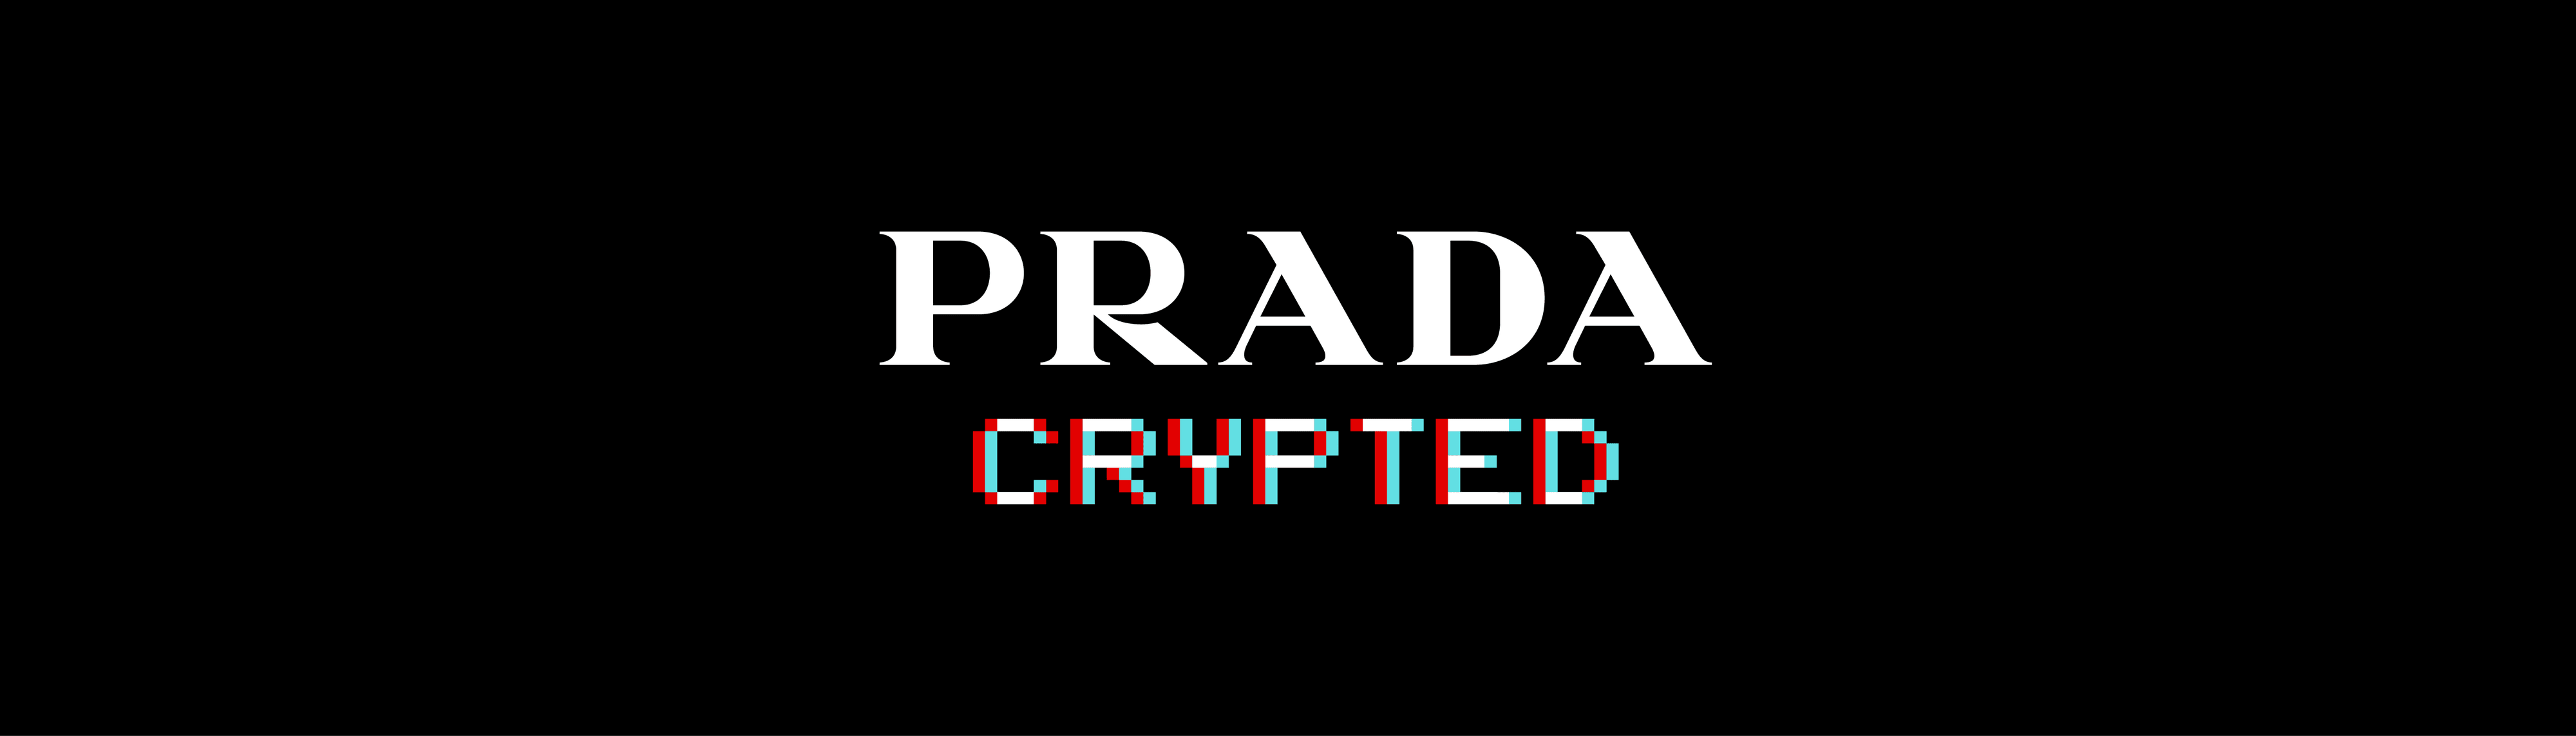 Prada-Crypted bannière